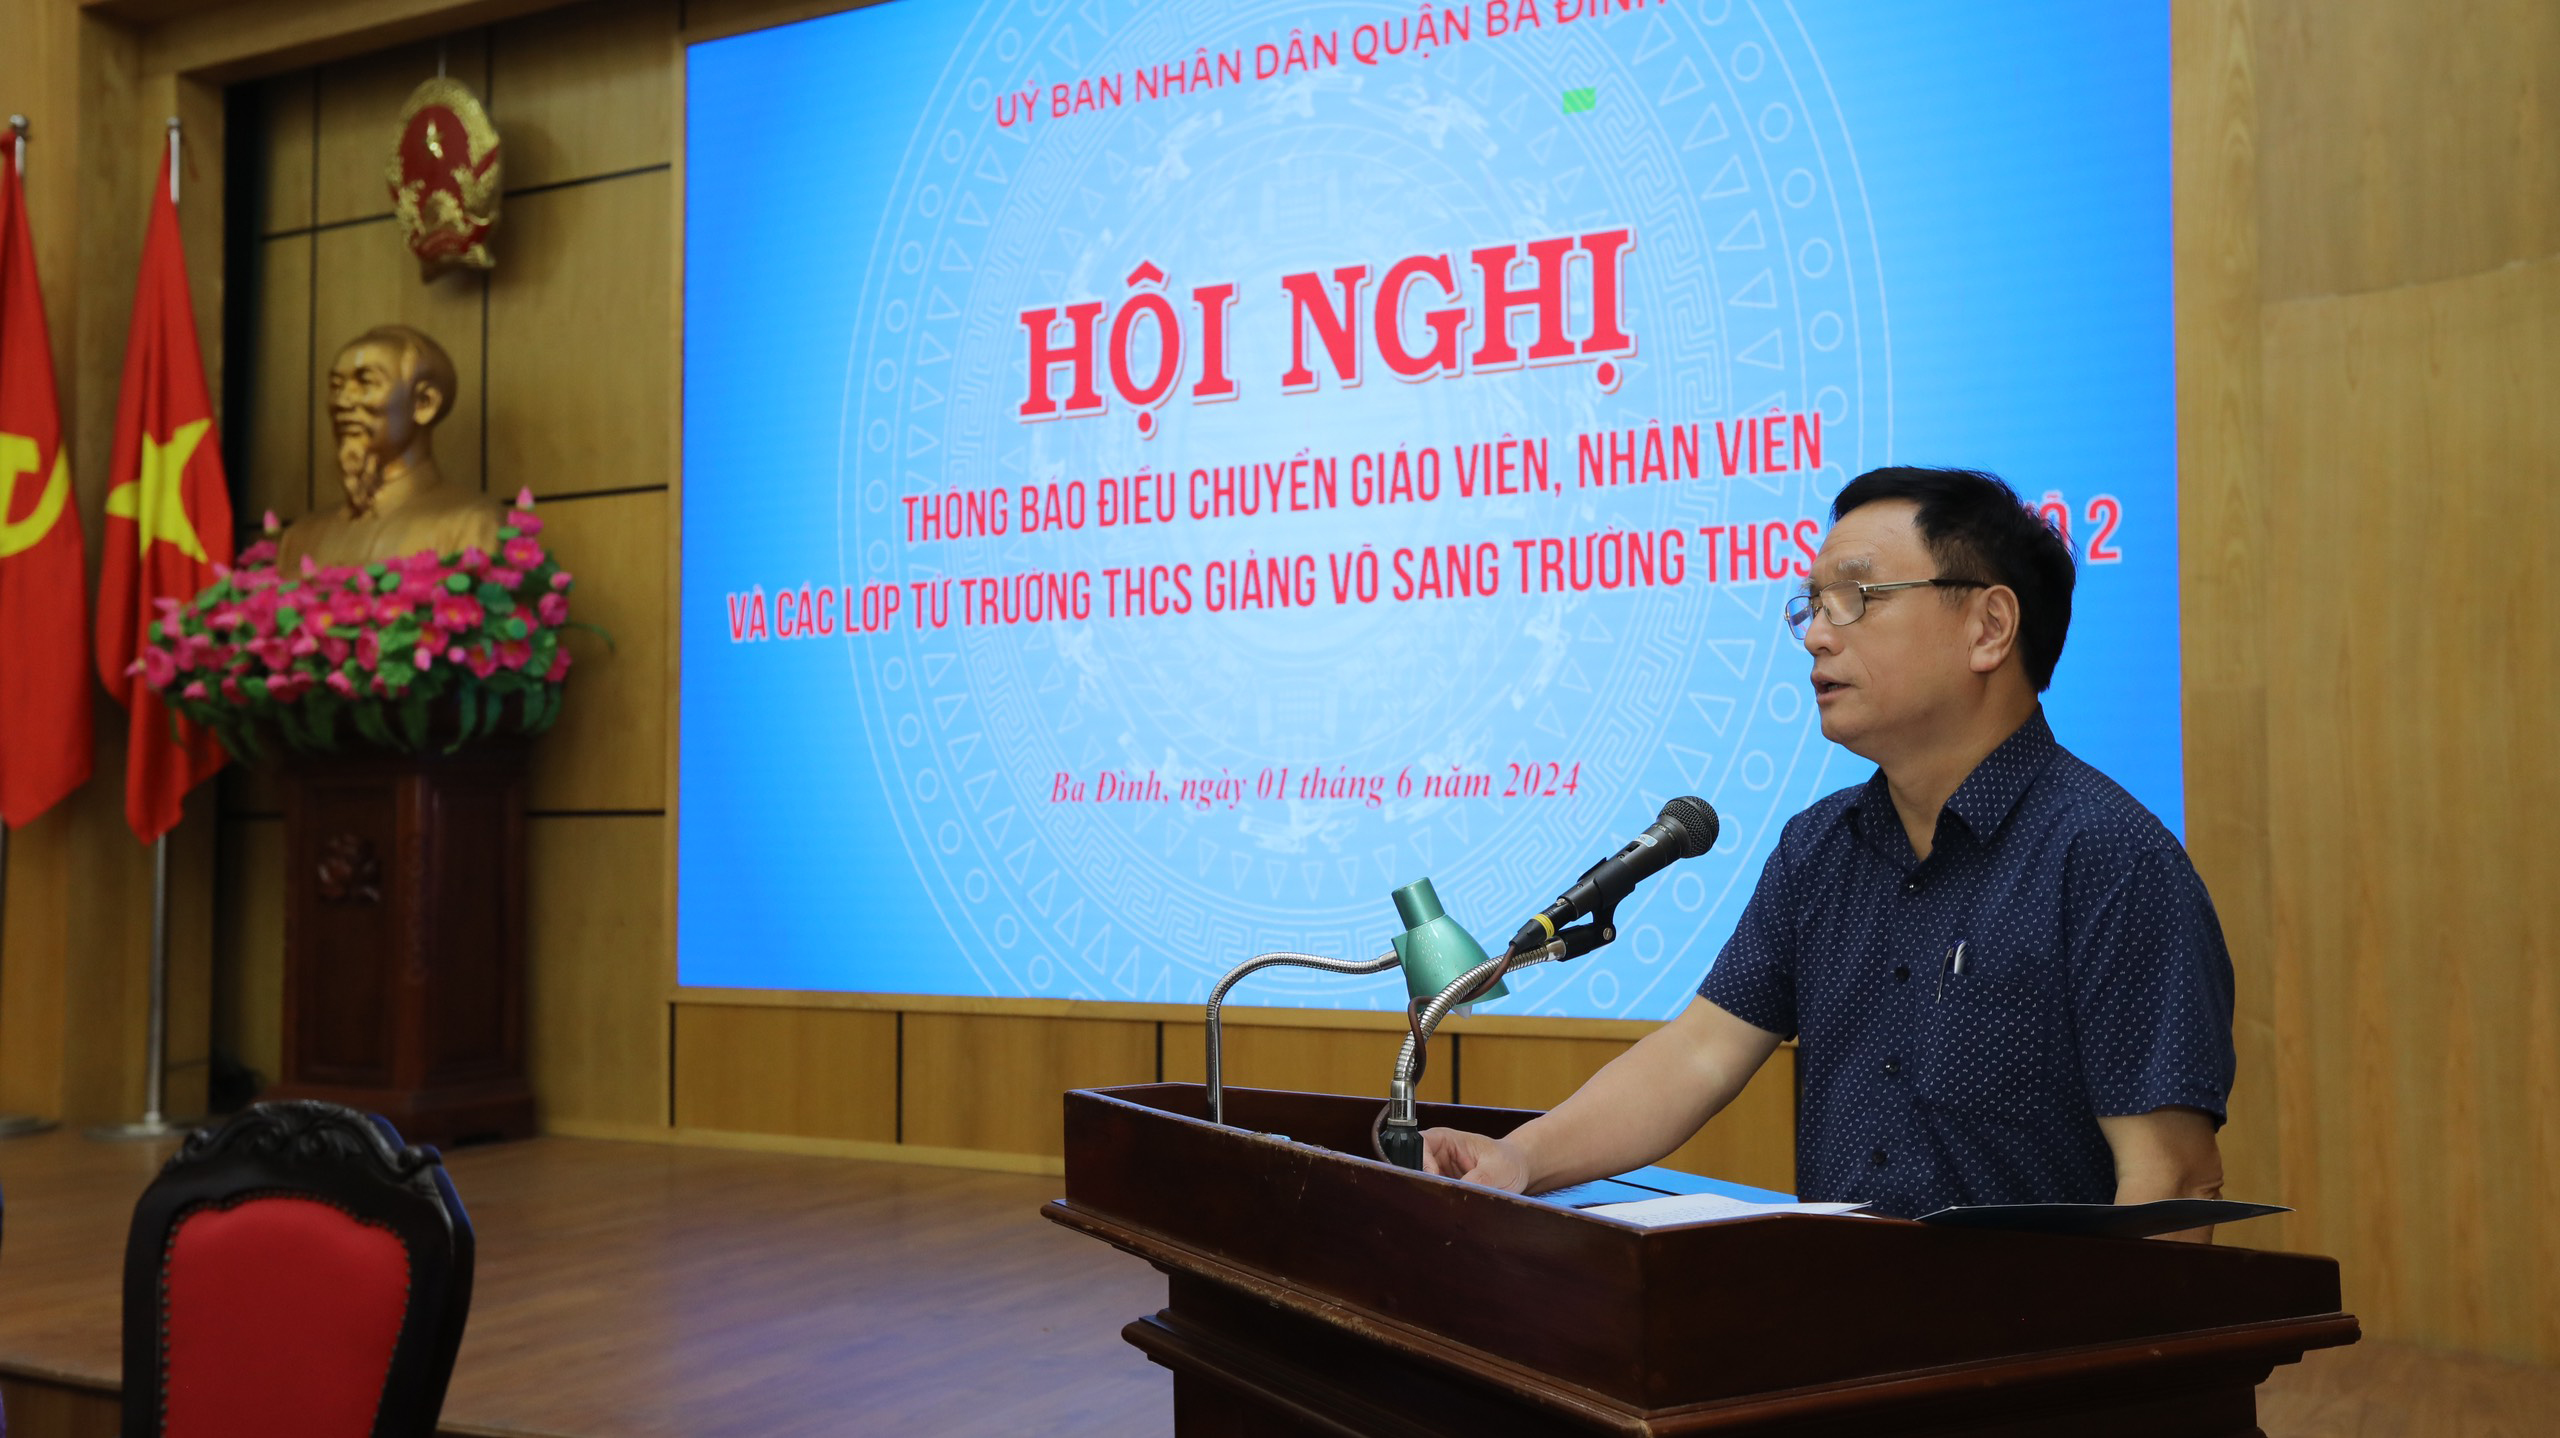 Ông Nguyễn Mạnh Cường, Trưởng phòng Nội vụ quận Ba Đình phát biểu tại hội nghị.